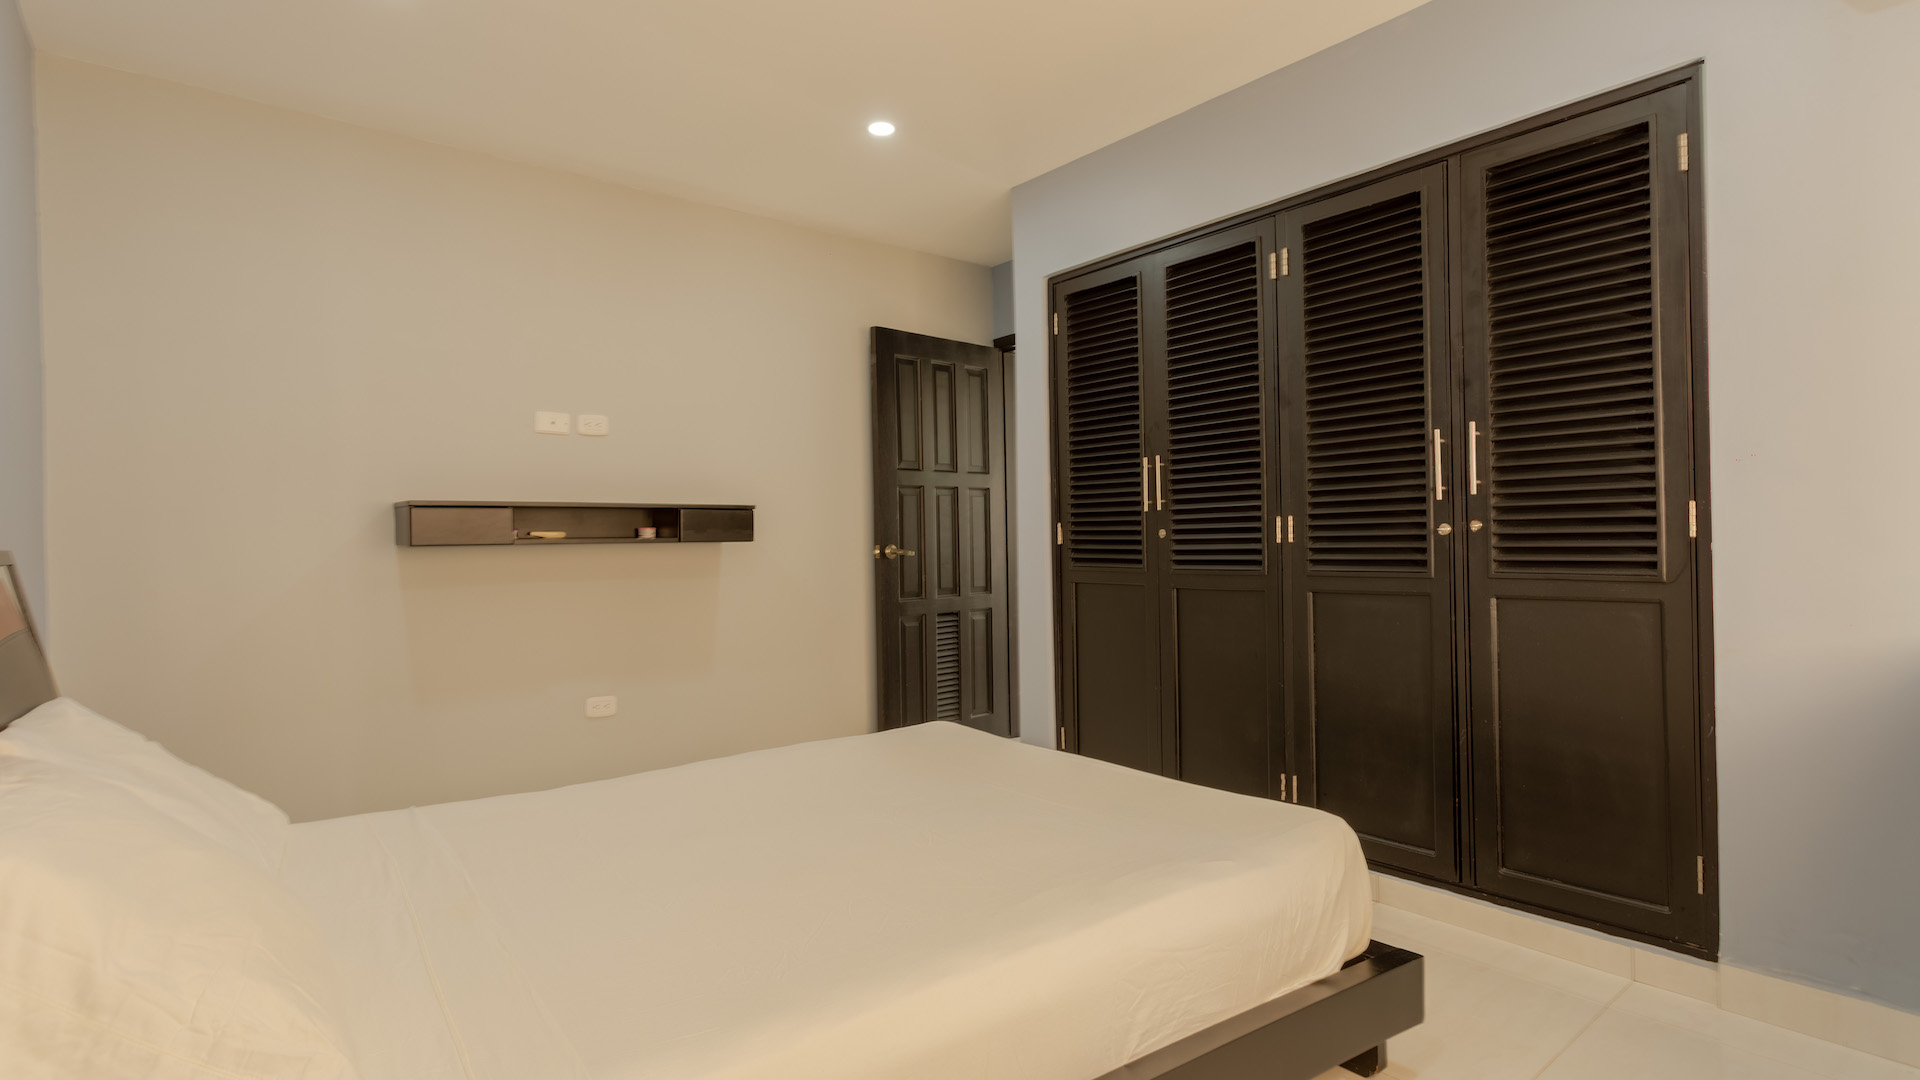 CARTAGENA – Bocagrande Ocean Front – Affordable 3 bedroom